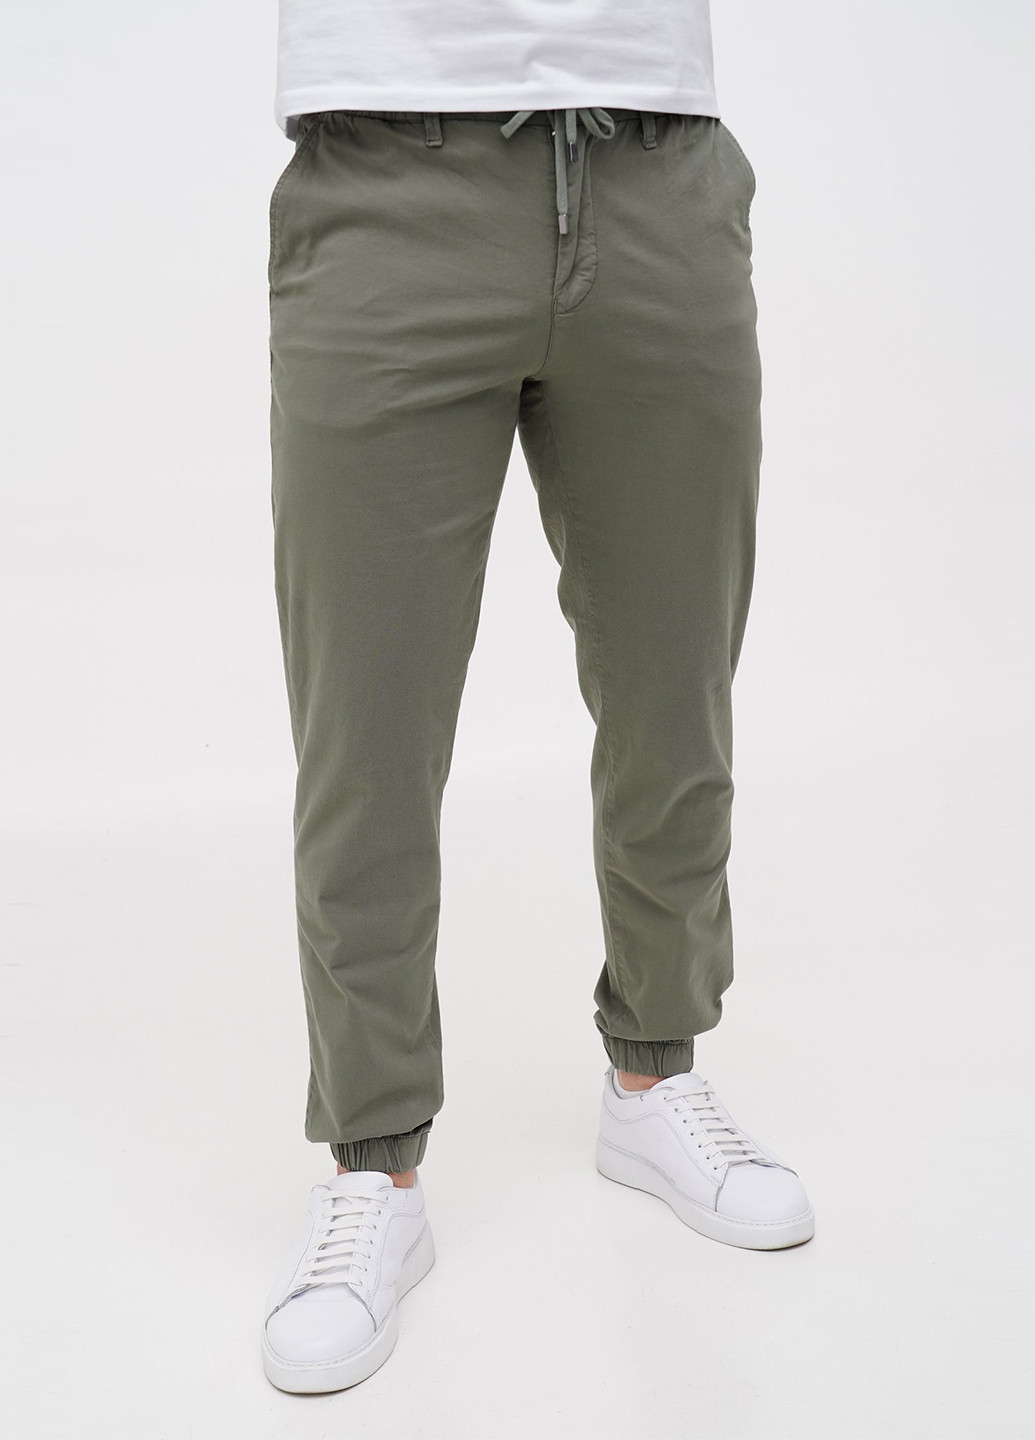 Хаки кэжуал демисезонные джоггеры брюки Trend Collection